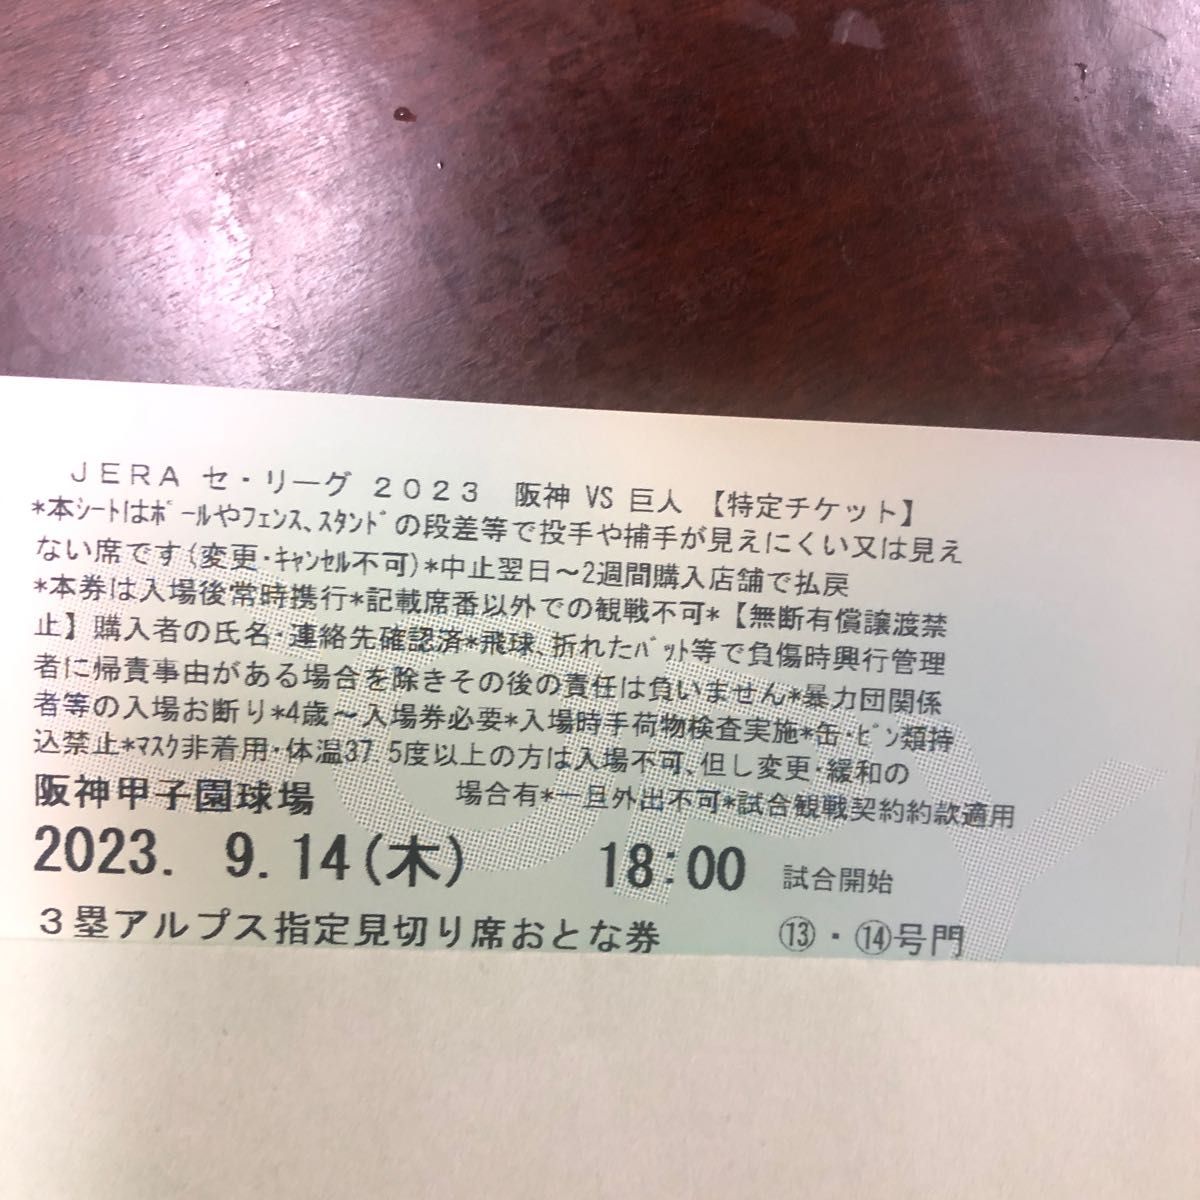 阪神タイガース 2023 14 使用済みチケット2枚